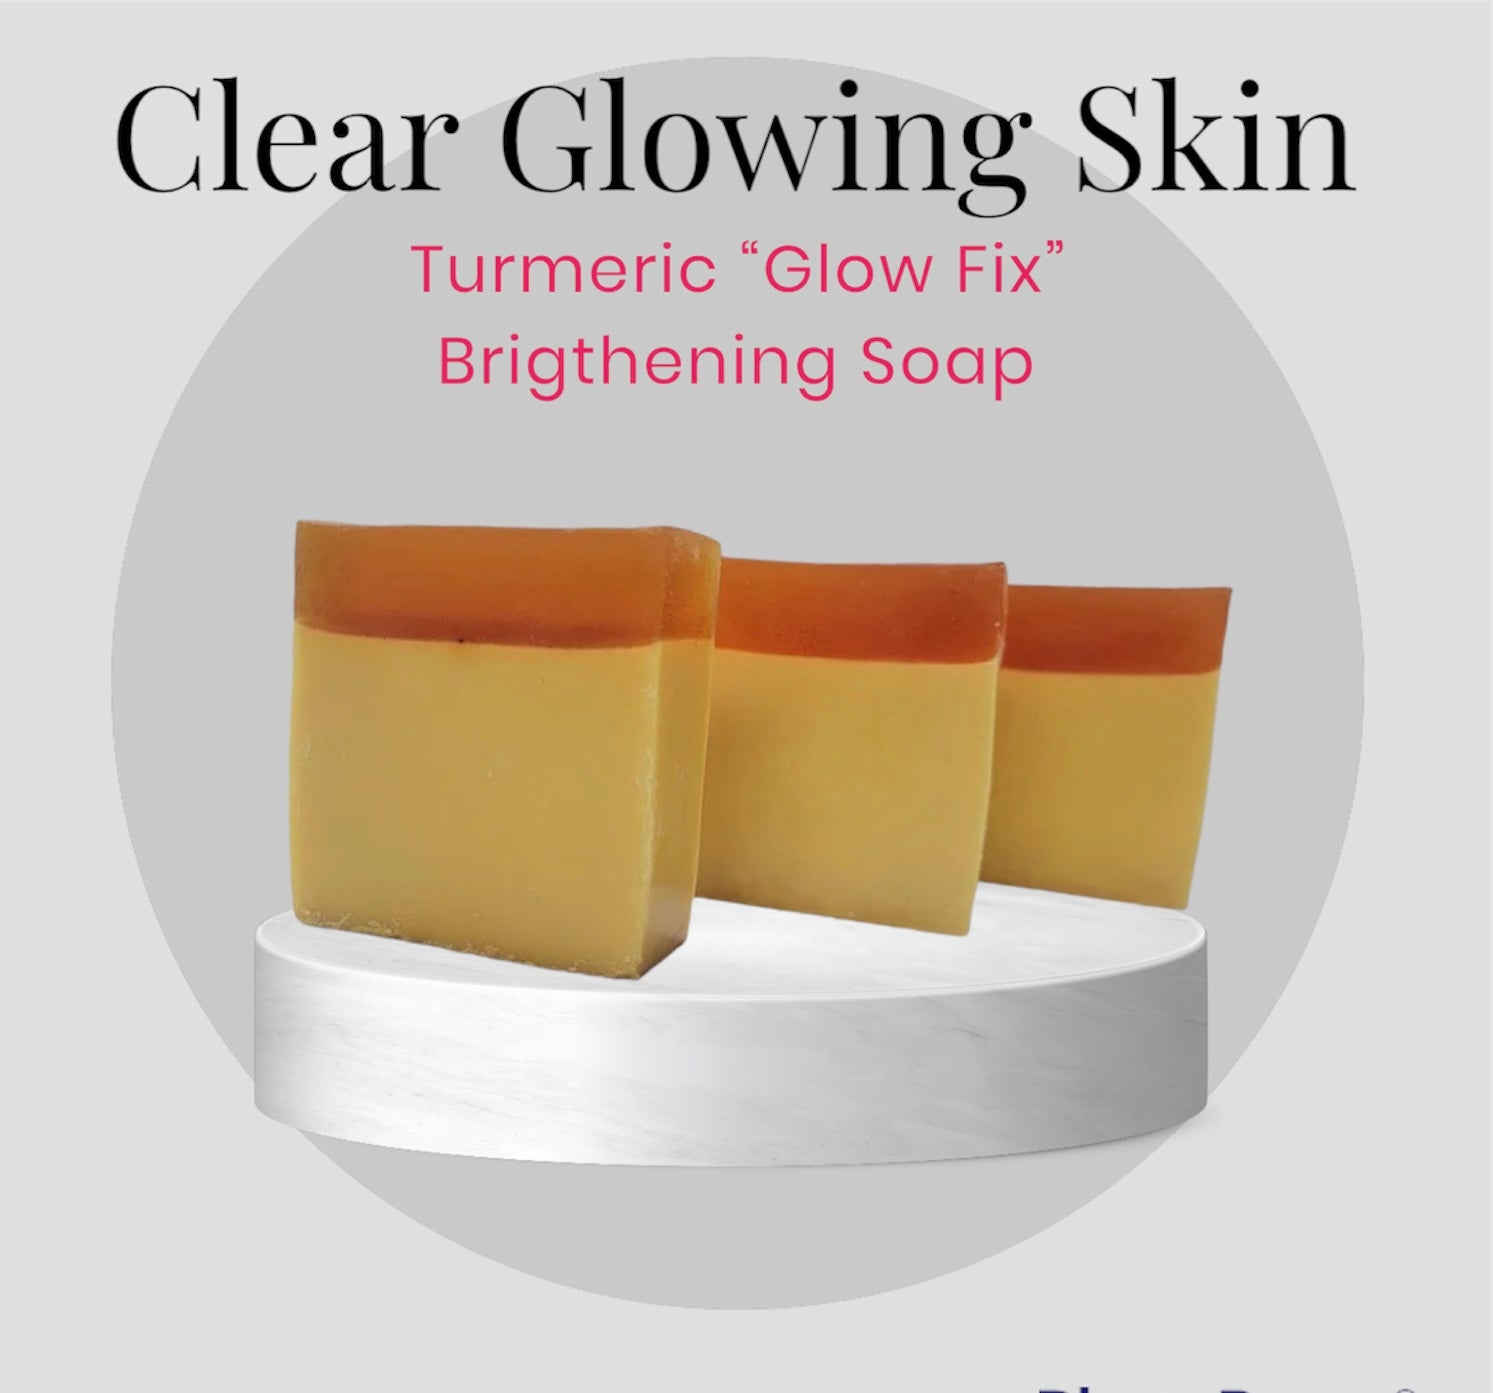 Turmeric “Glow fix” brightening soap